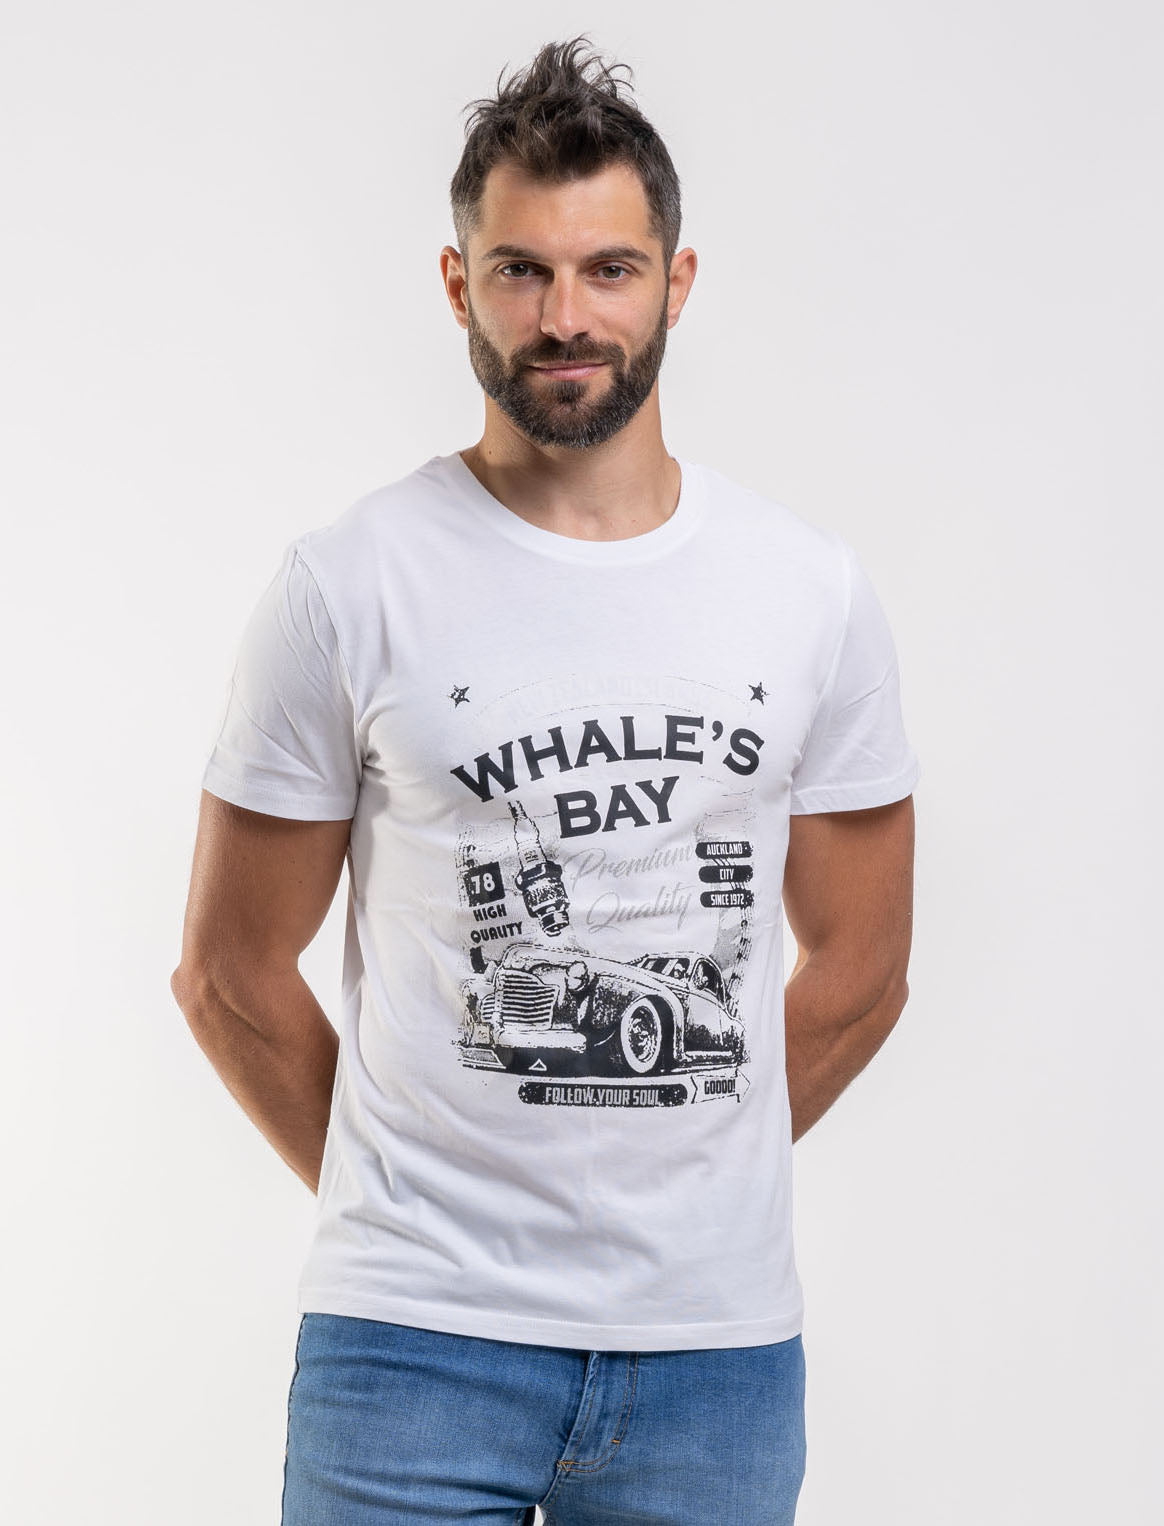 T-shirt HD-Premium - Whale's Bay